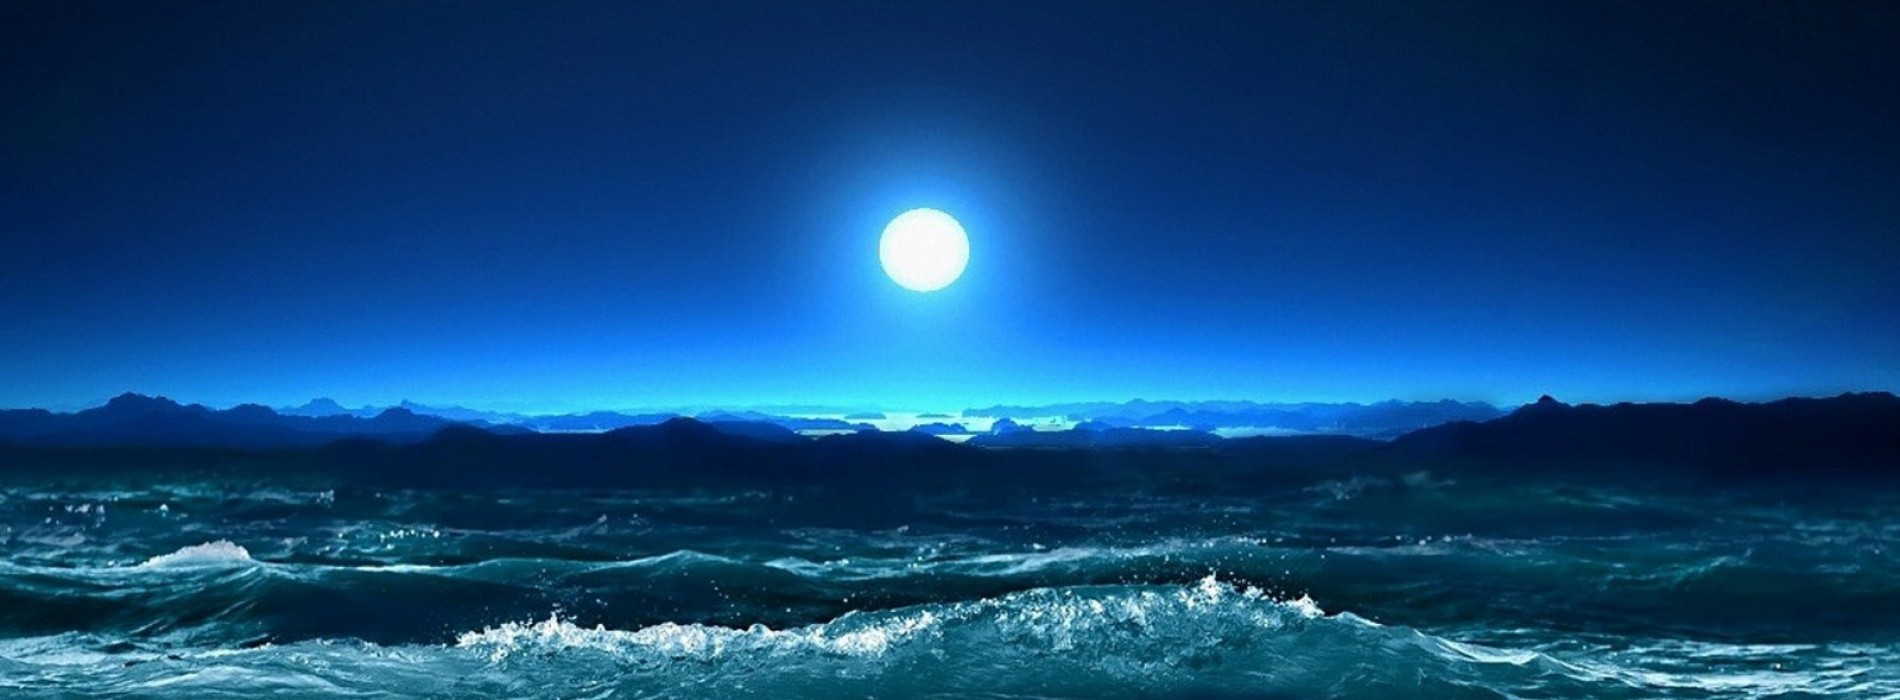 美しい月光愛のhd壁紙,空,自然,月光,海洋,波